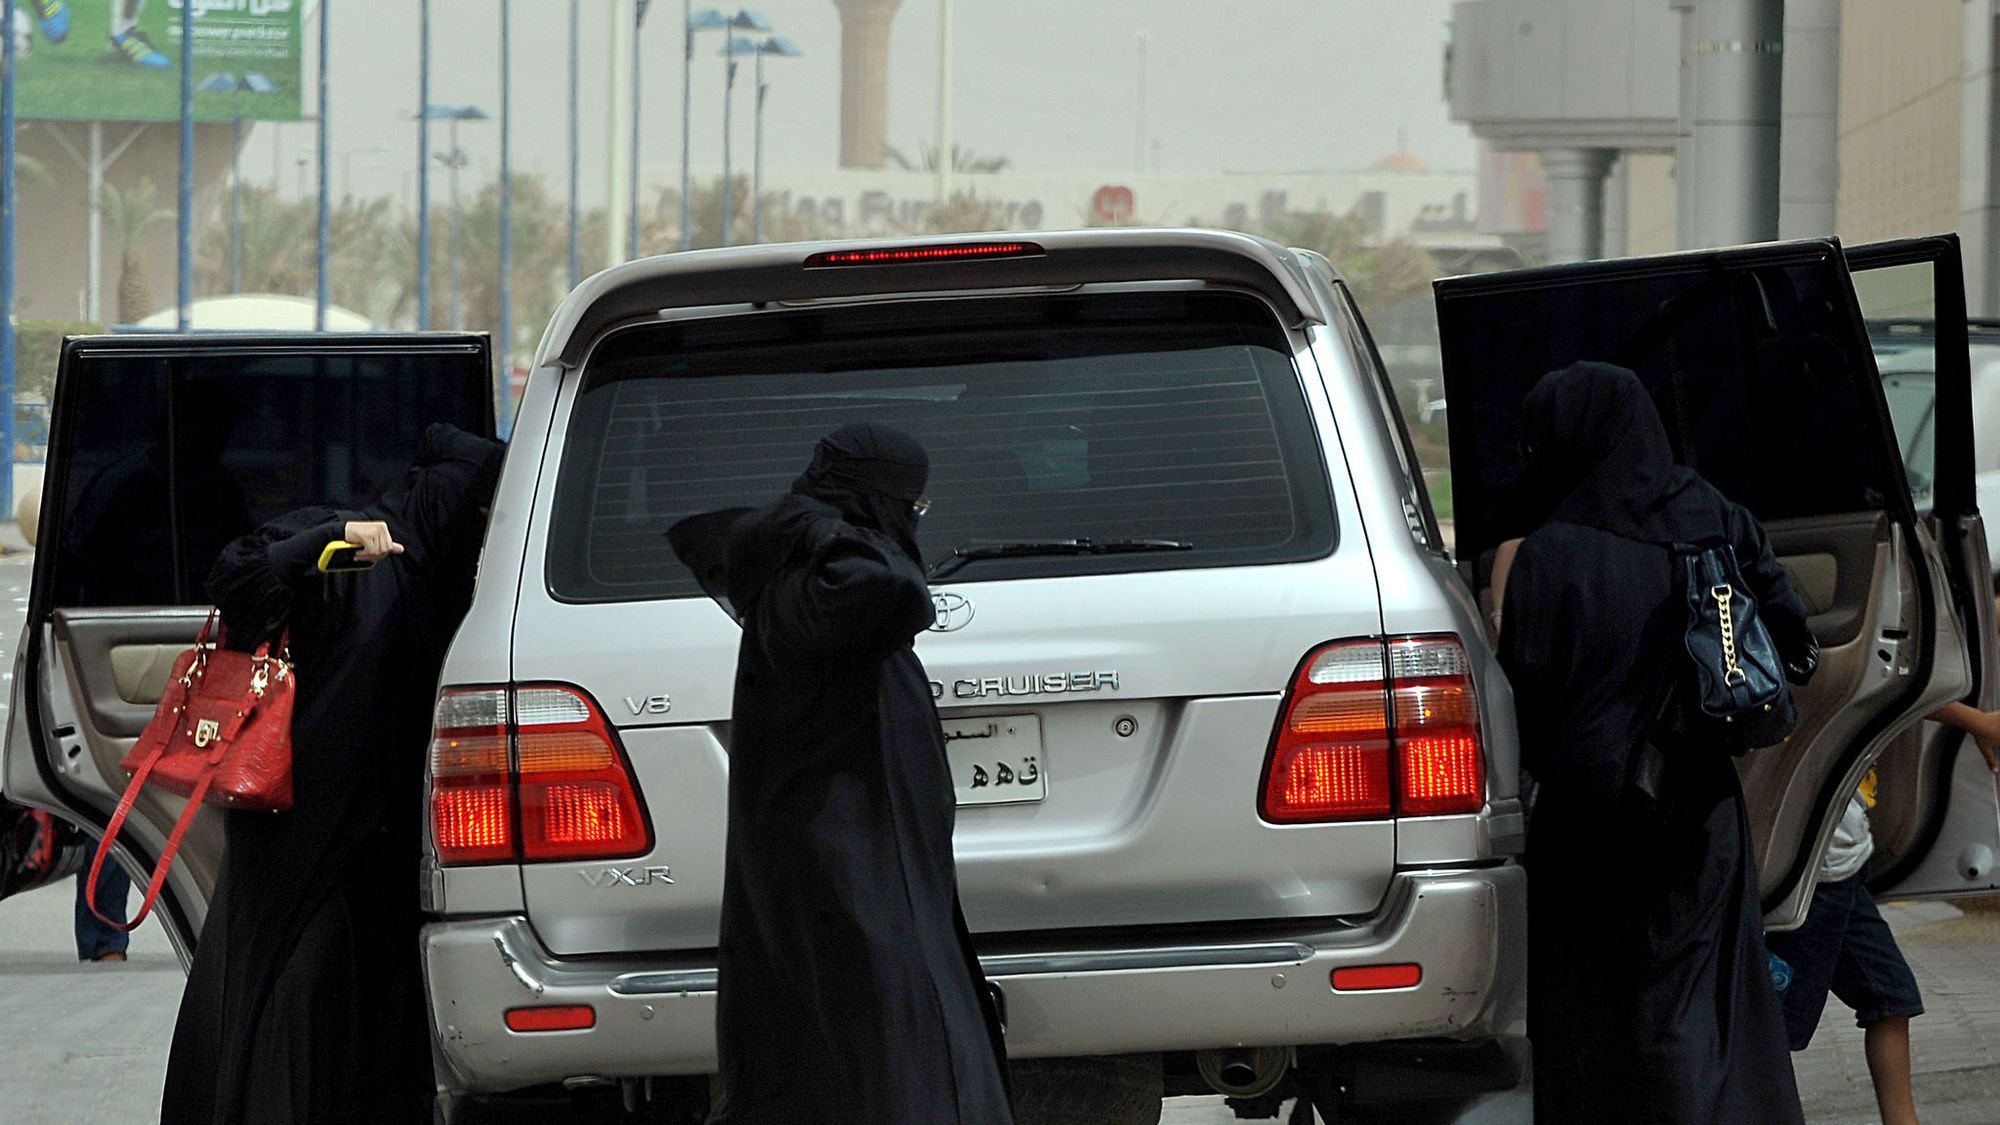 Arabie saoudite: les femmes autorisées à conduire, un tabou brisé - L'Express